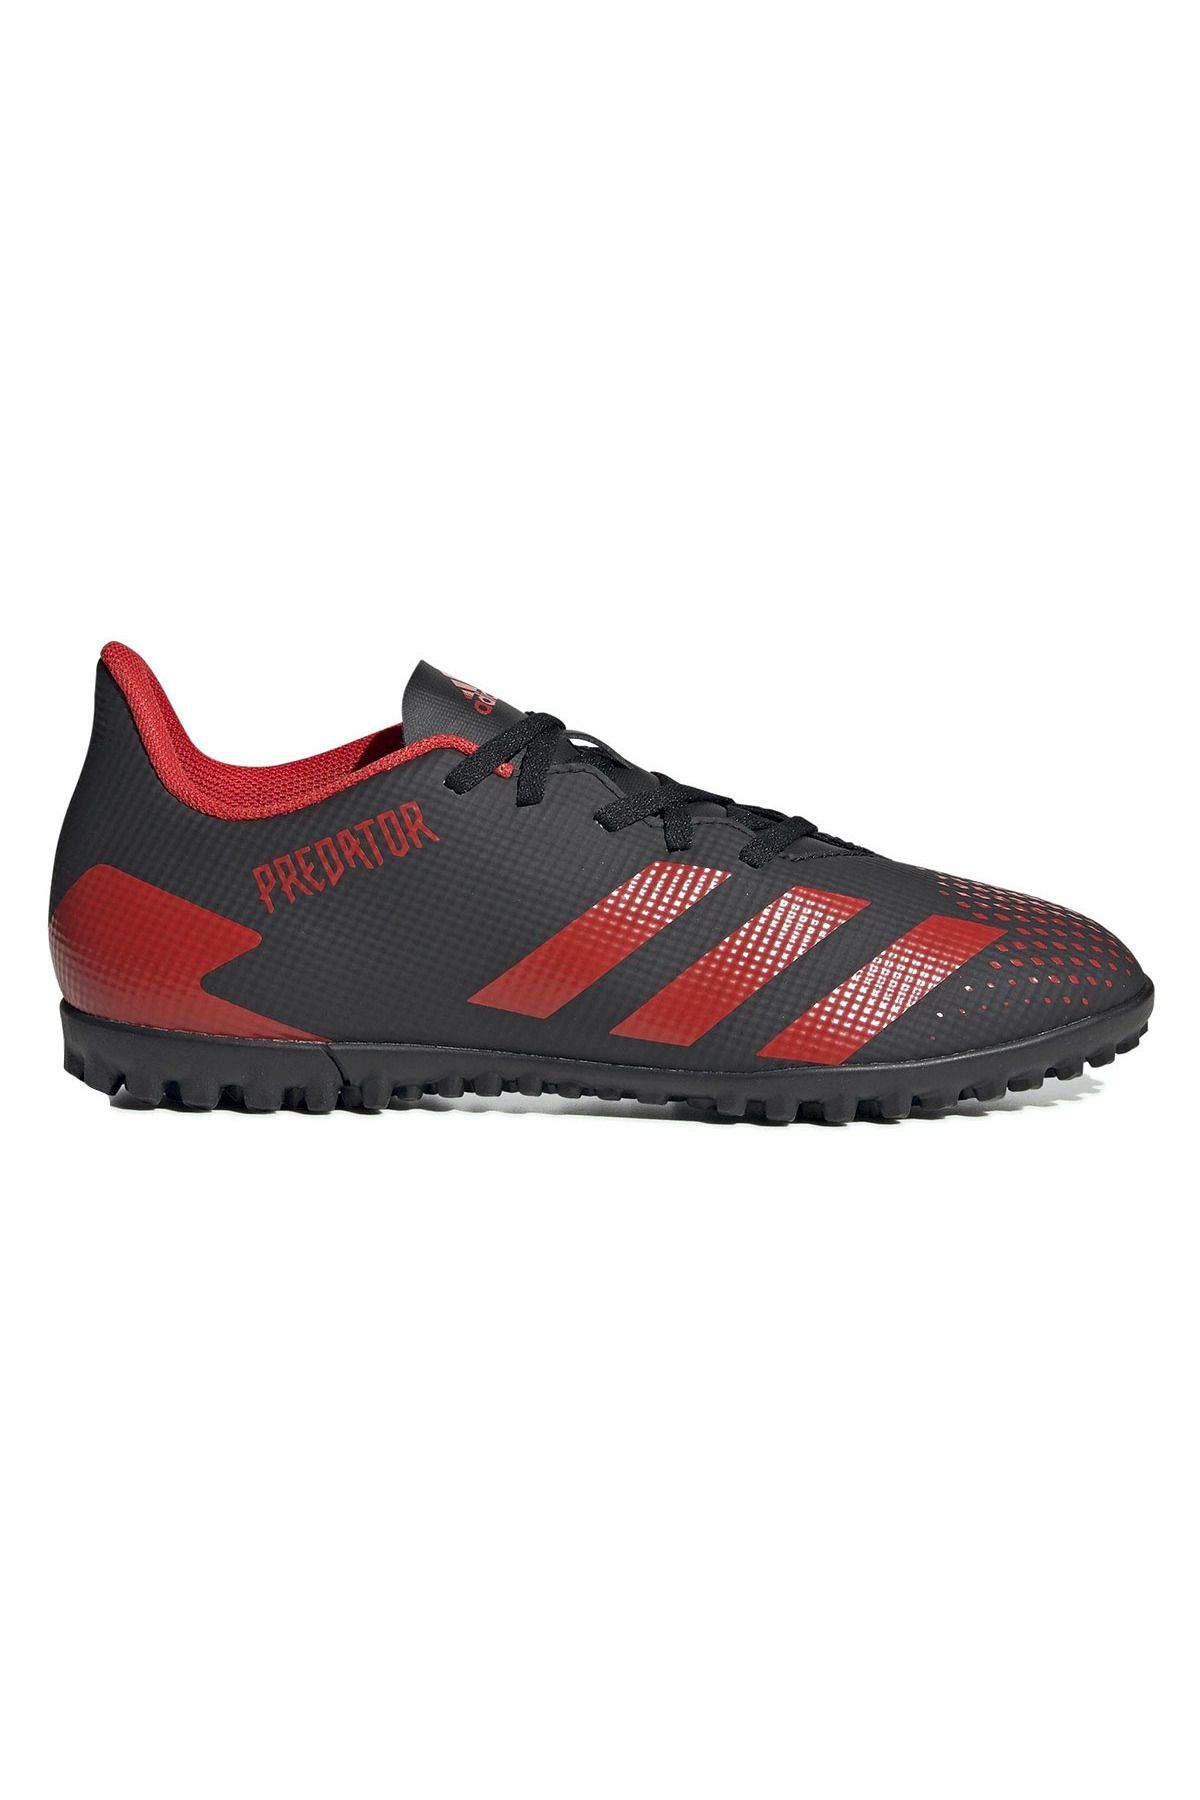 adidas Predator Turf Boots Erkek Siyah Halı Saha Futbol Ayakkabısı Ee9585